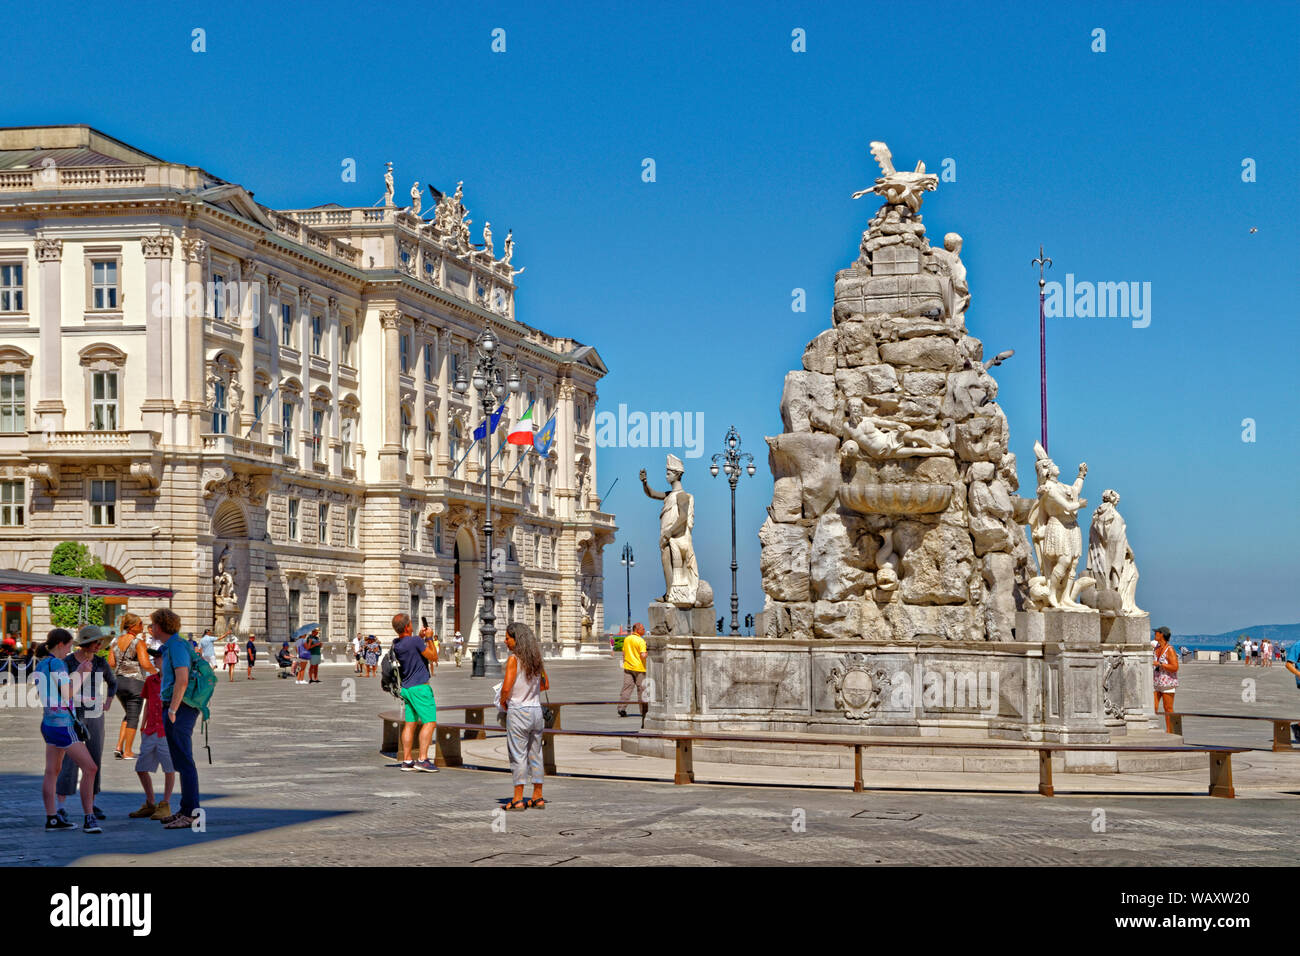 Piazza Unità d'Italia oder der italienischen Einheit Platz mit der Fontana dei Quattro Continenti, oder der Brunnen der vier Kontinente in Triest, Italien. Stockfoto